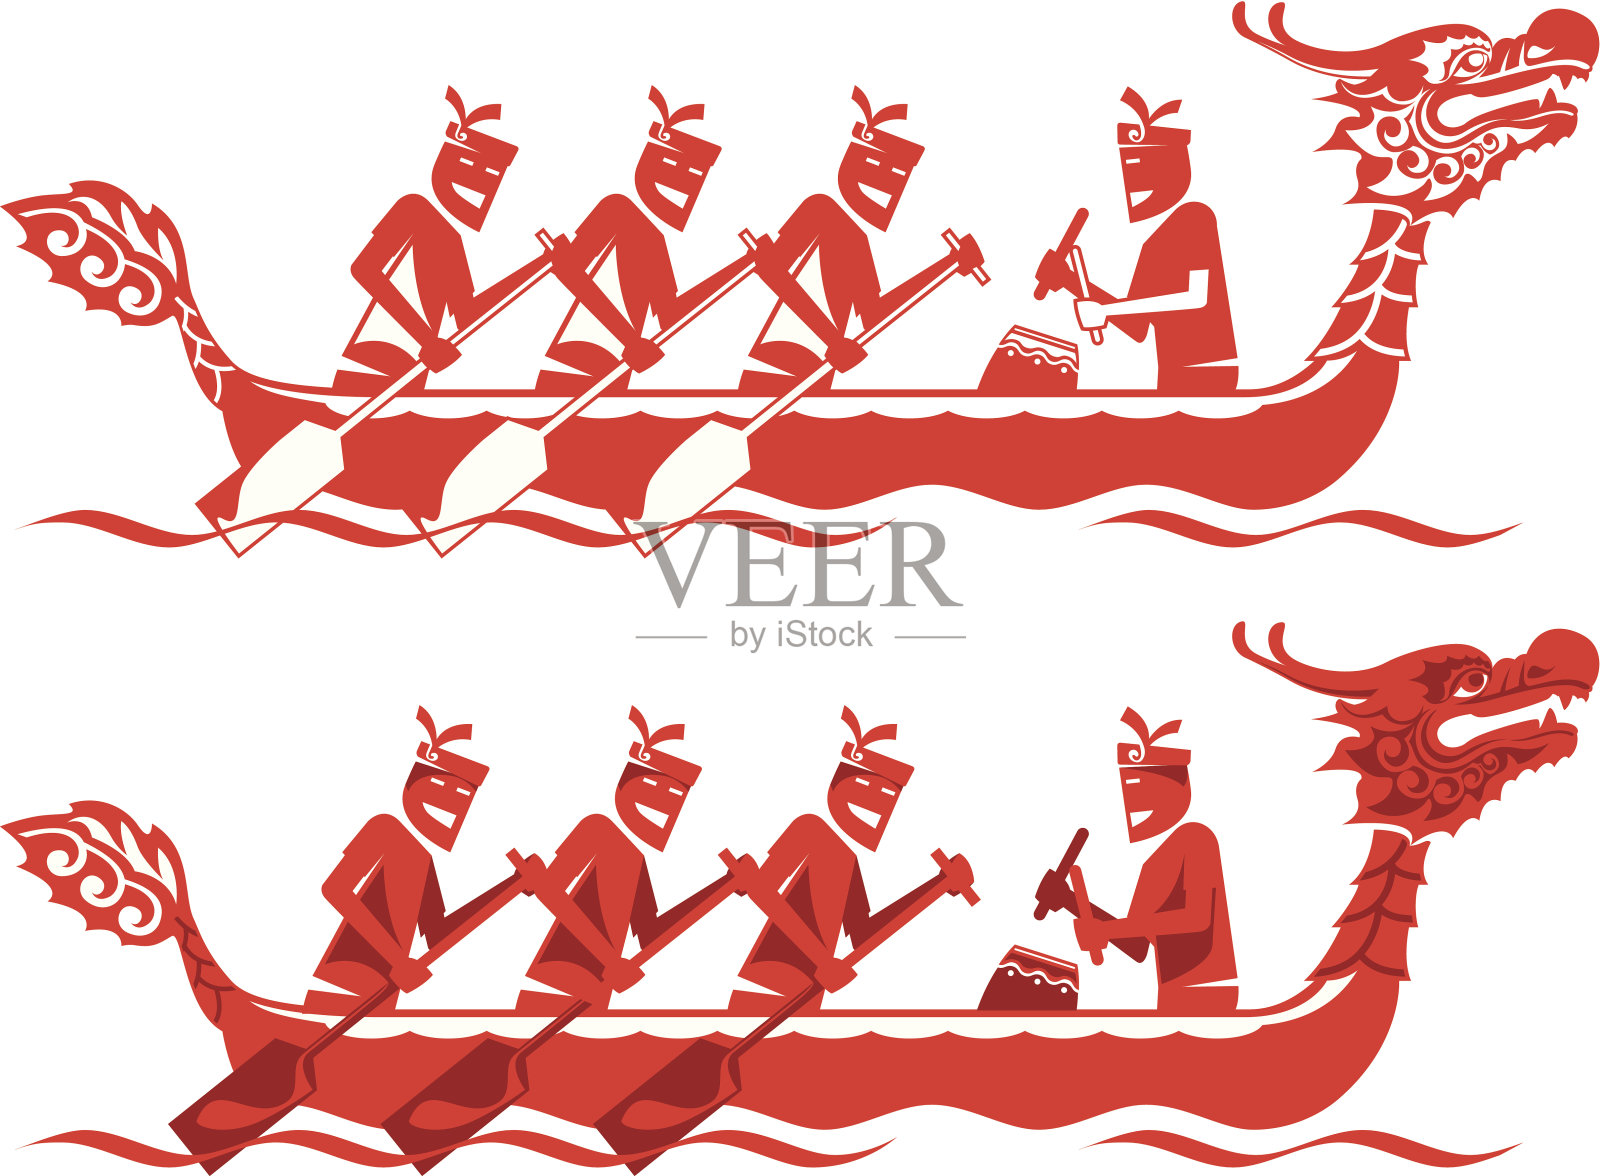 中国龙舟比赛插图设计模板素材